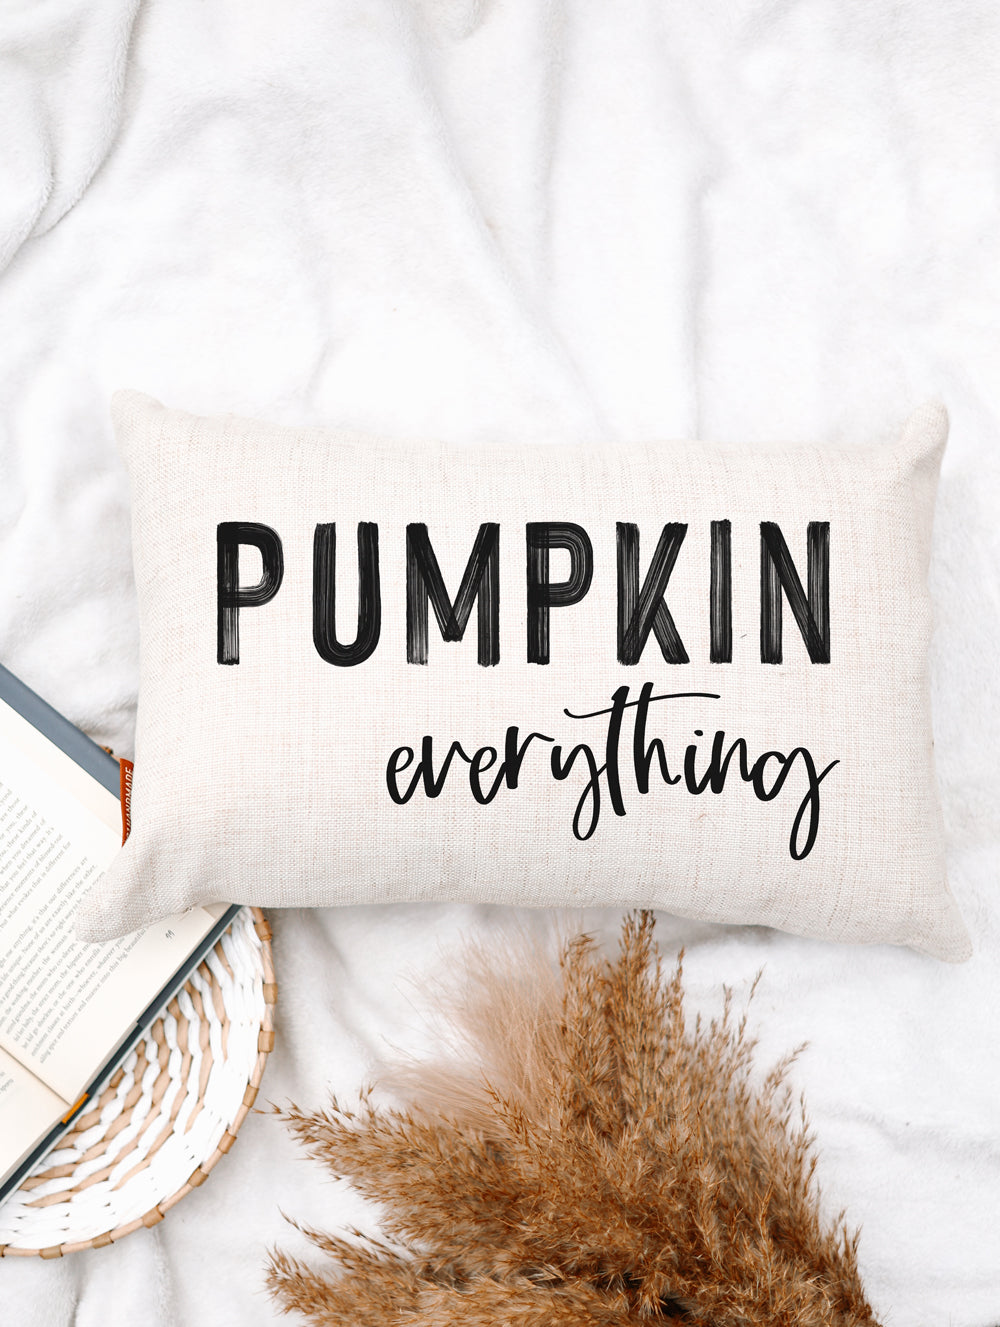 Pumpkin Everything Pillow